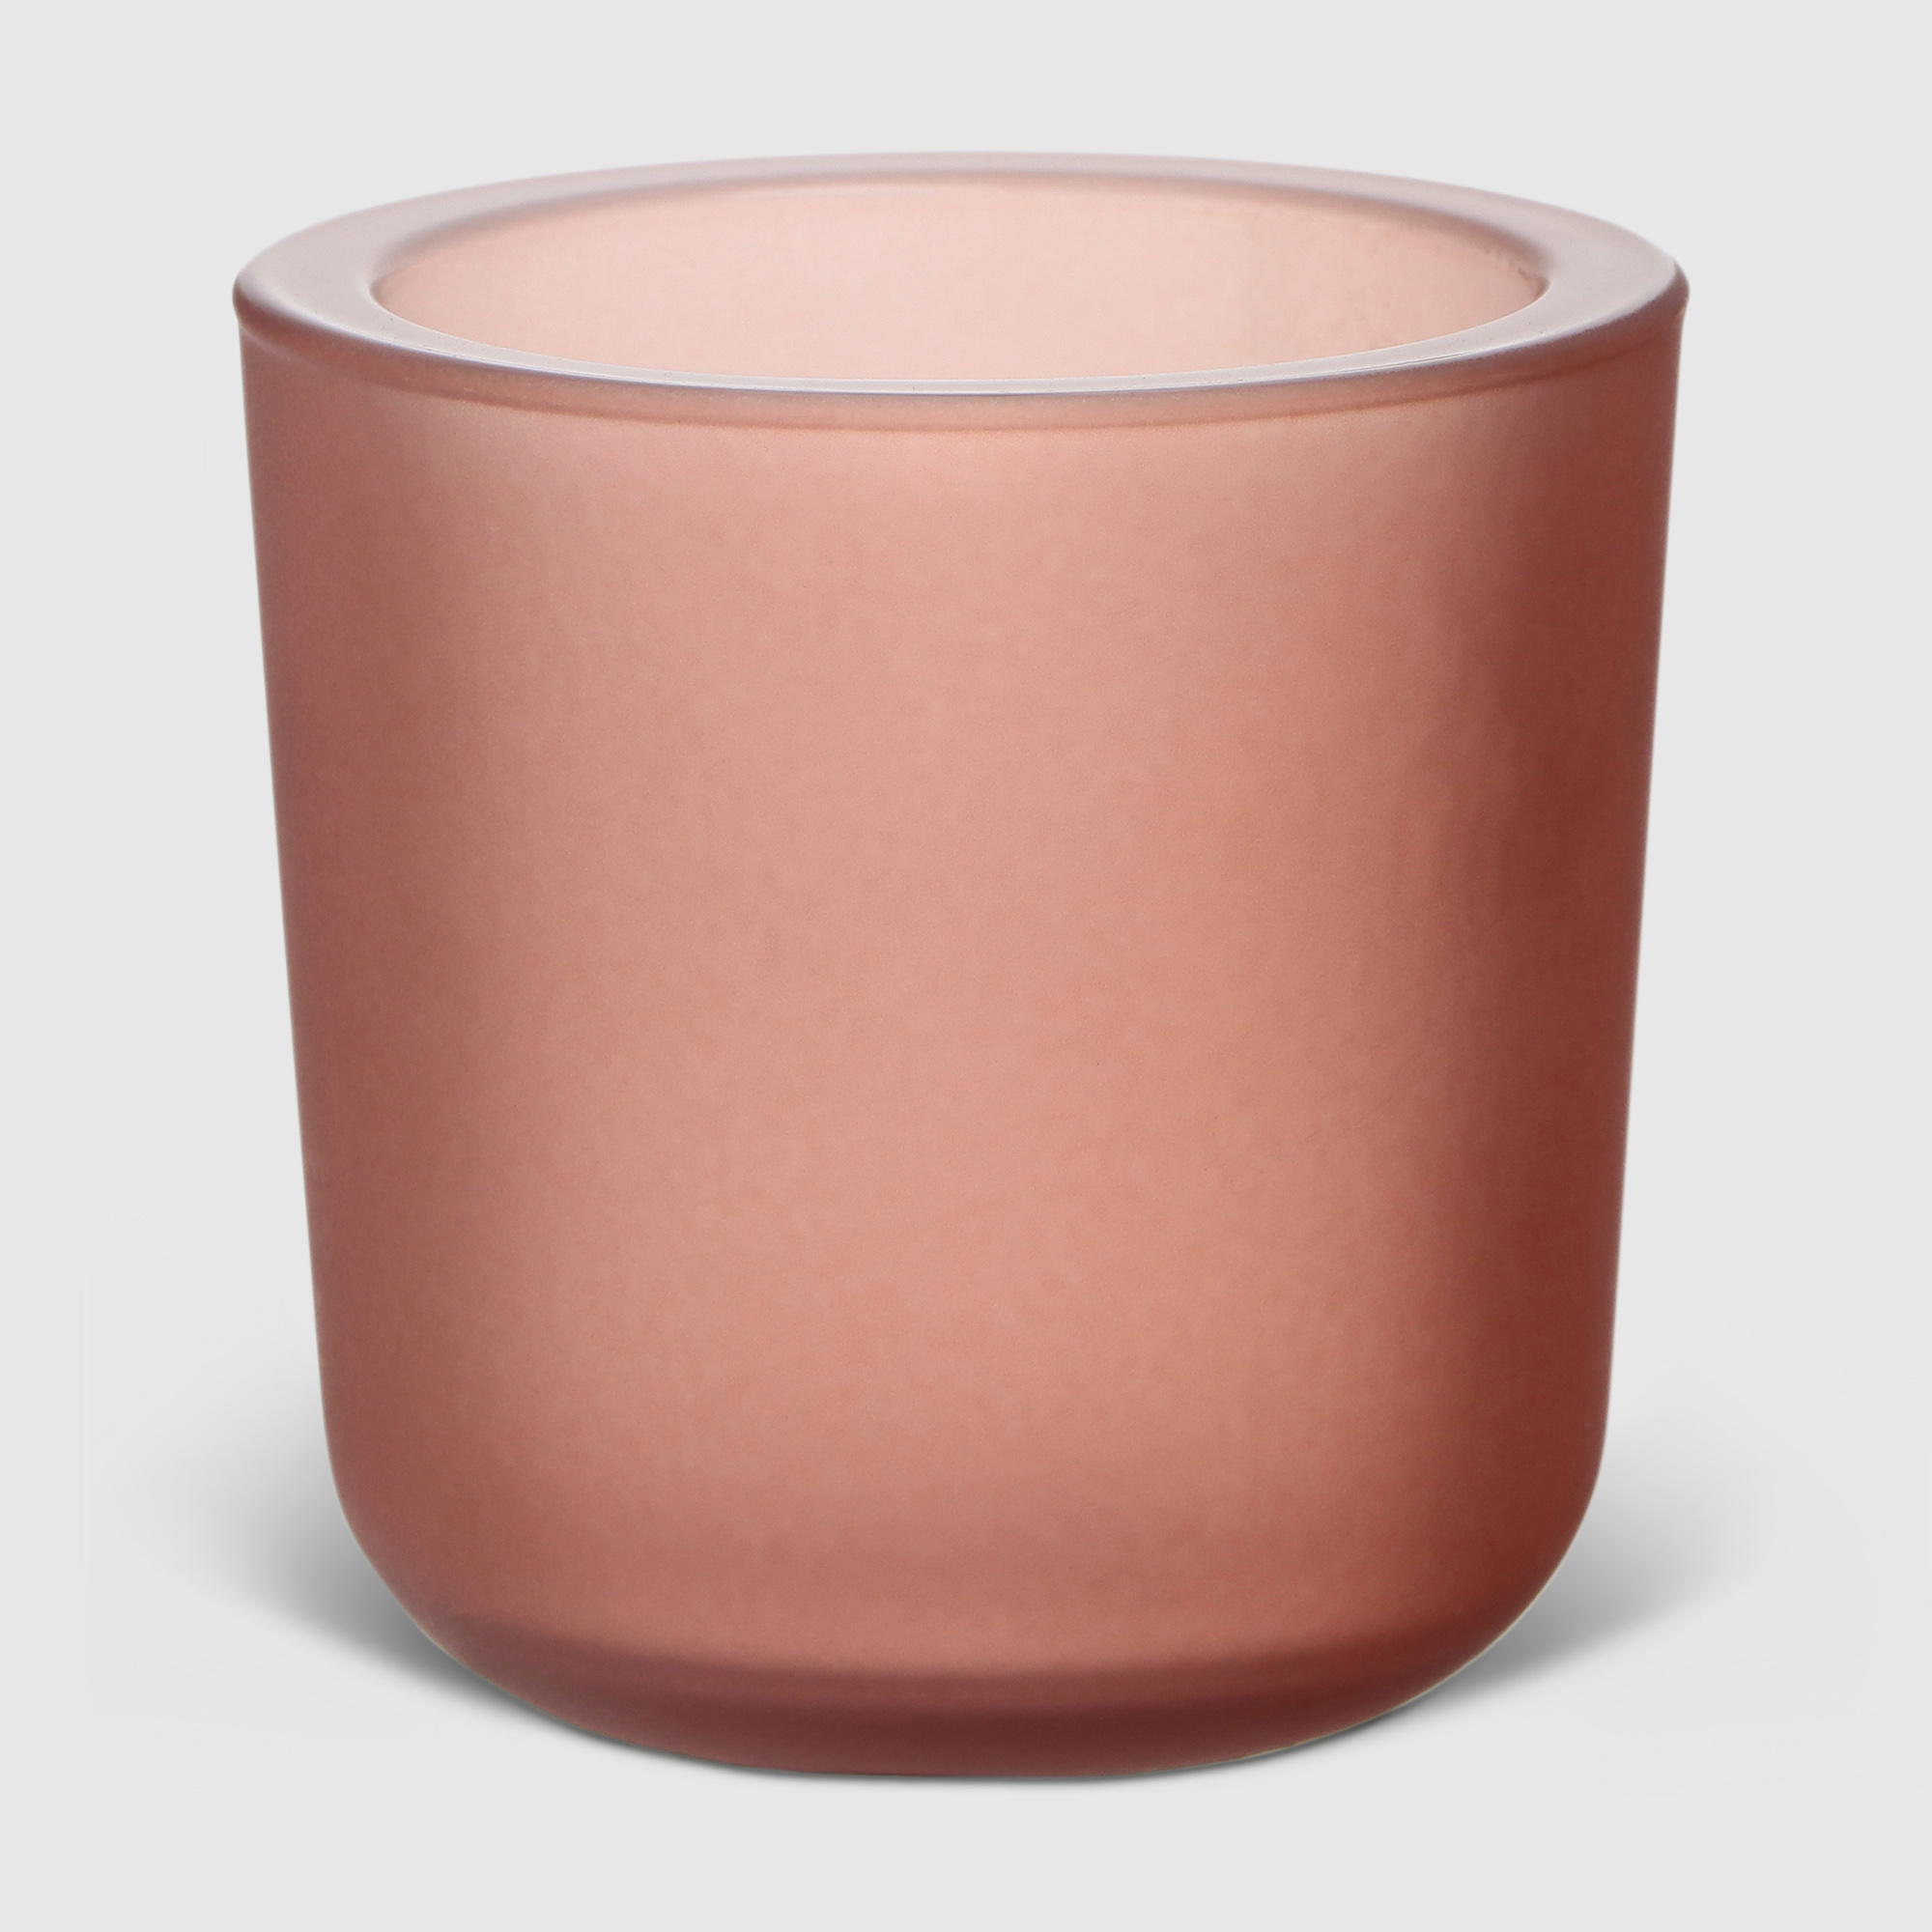 Ваза Hakbijl glass Yannik Розовая 8х8 см ваза san miguel peach cream розовая 21 см